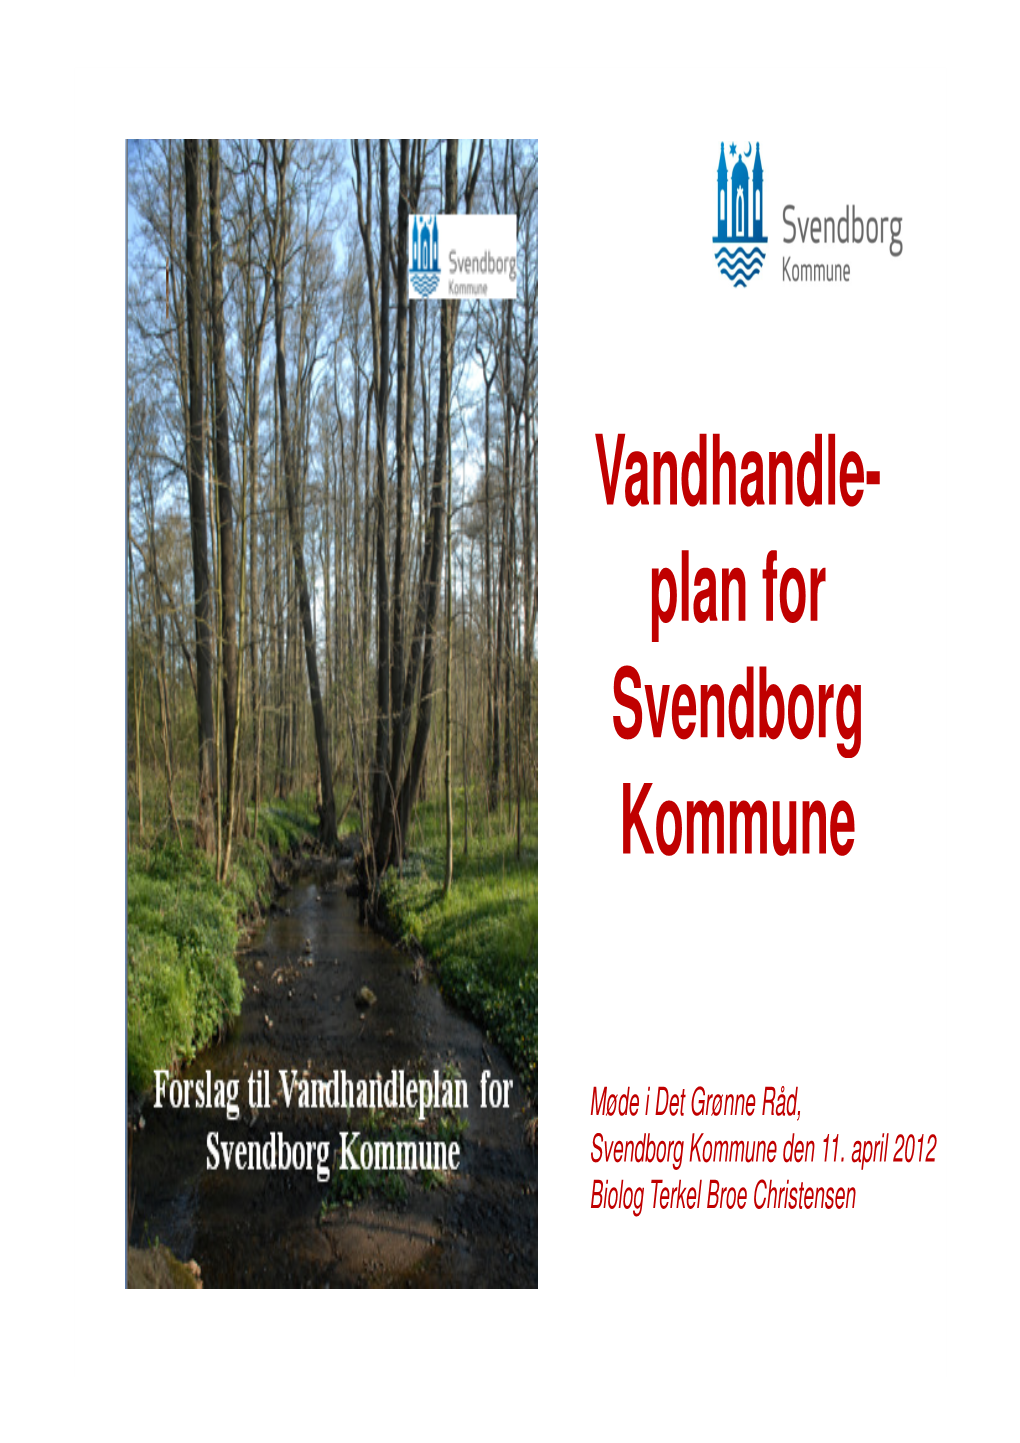 Vandhandle- Plan for Svendborg Kommune